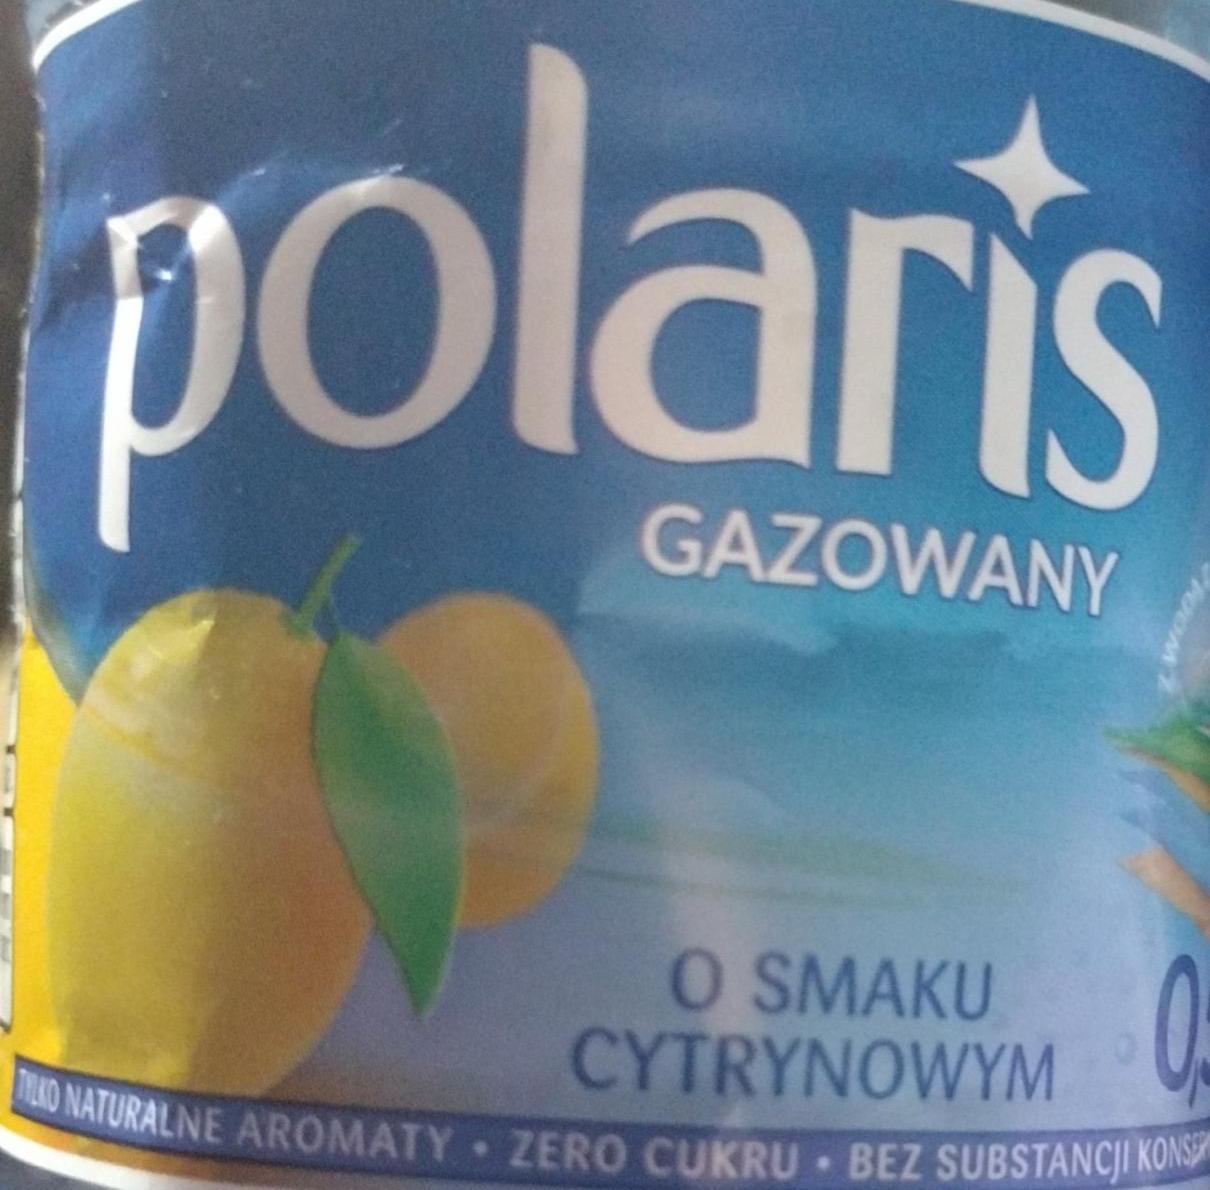 Fotografie - Polaris gazowany o smaku cytrynowym